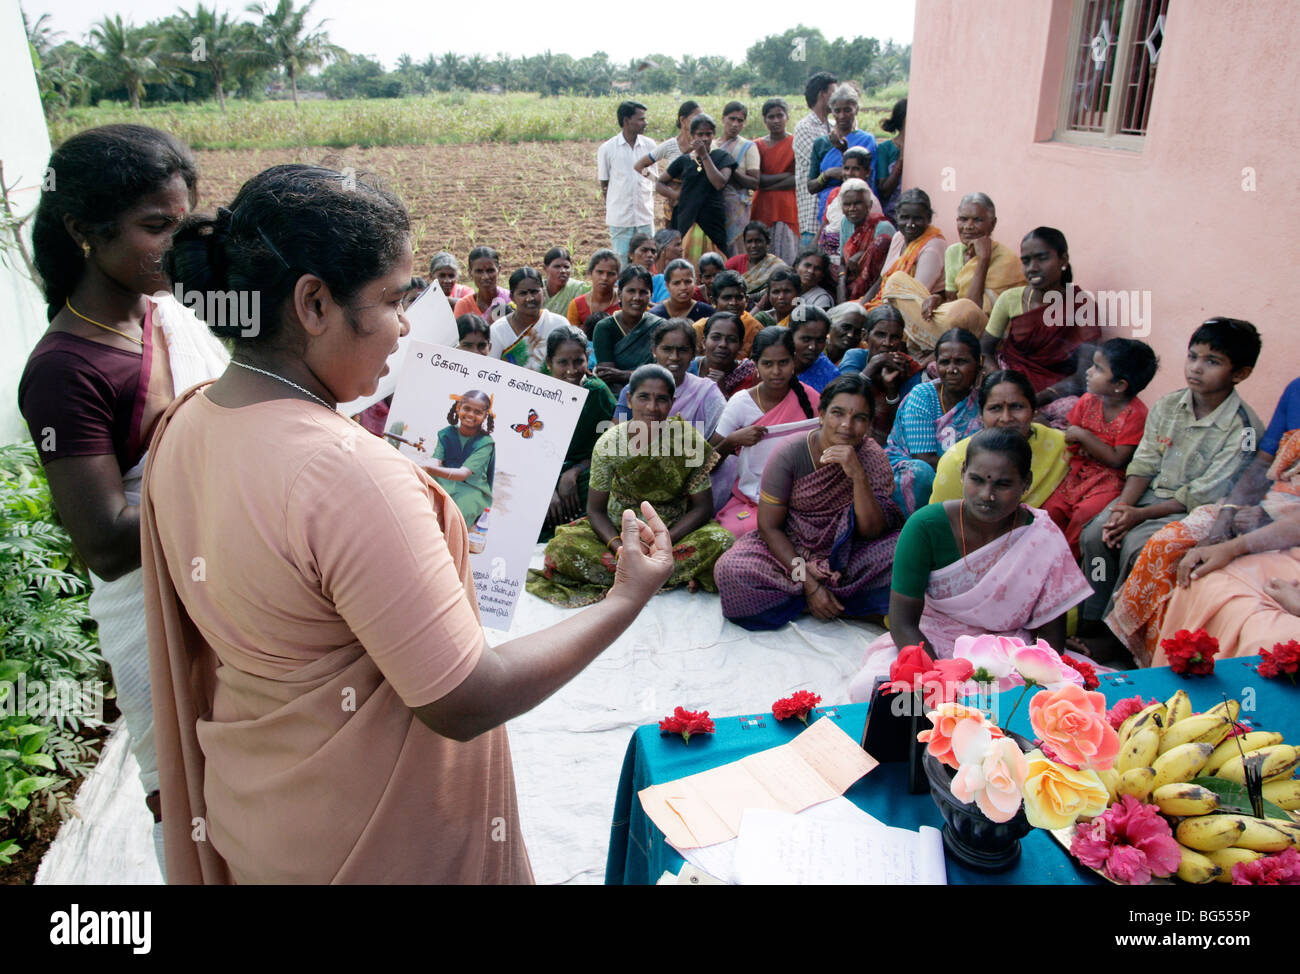 Indien: Gesundheit-Awareness-Programm der katholischen Schwestern in einem Dorf in Tamil Nadu Zustand Stockfoto